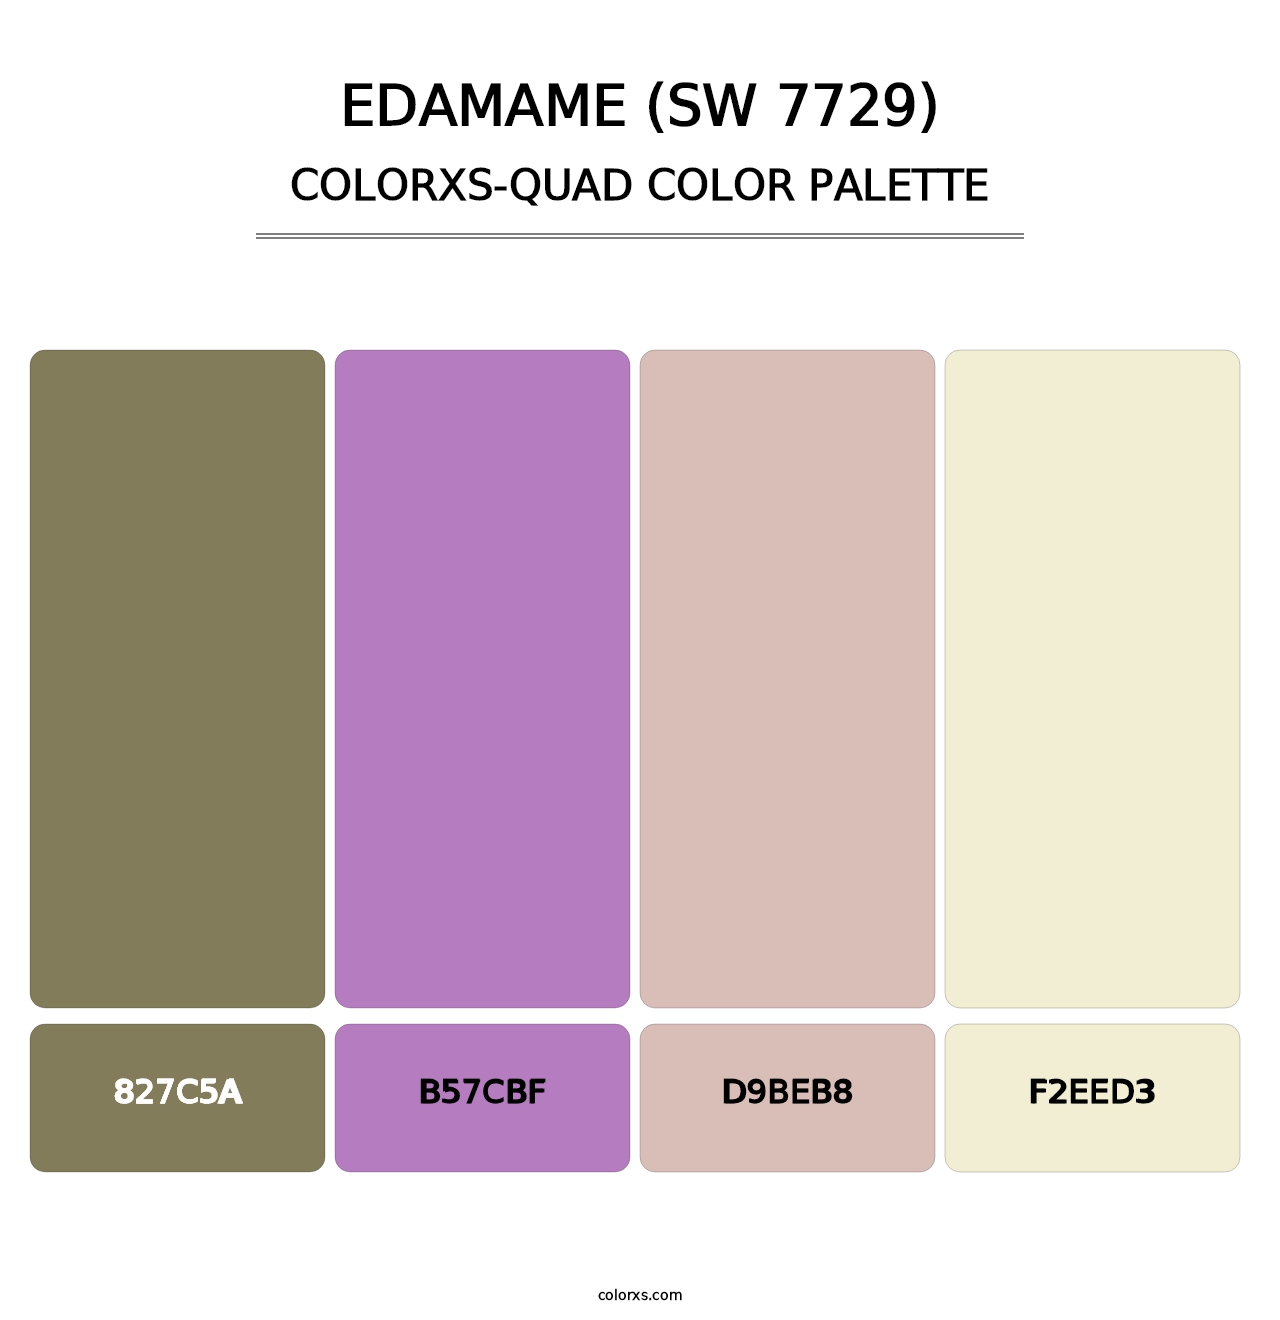 Edamame (SW 7729) - Colorxs Quad Palette